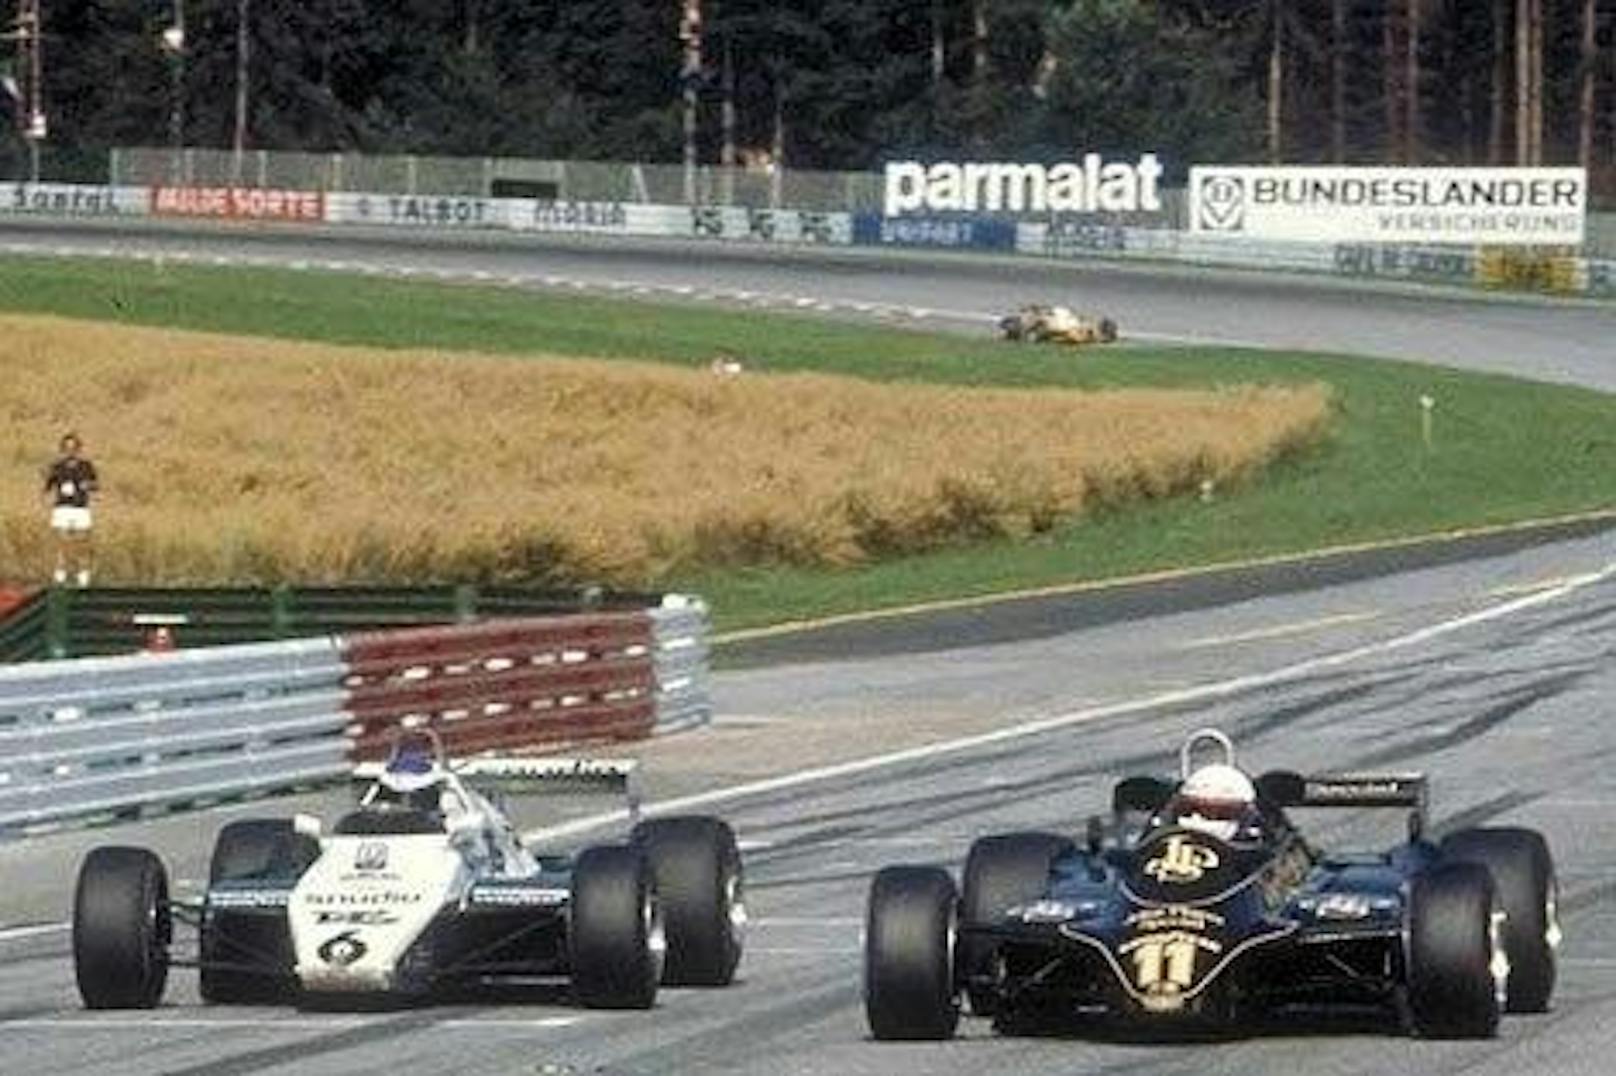 1982: Einer der knappsten Rennabstände in der Formel-1-Geschichte. Elio de Angelis schlug Keke Rosberg um bloß 0,05 Sekunden.